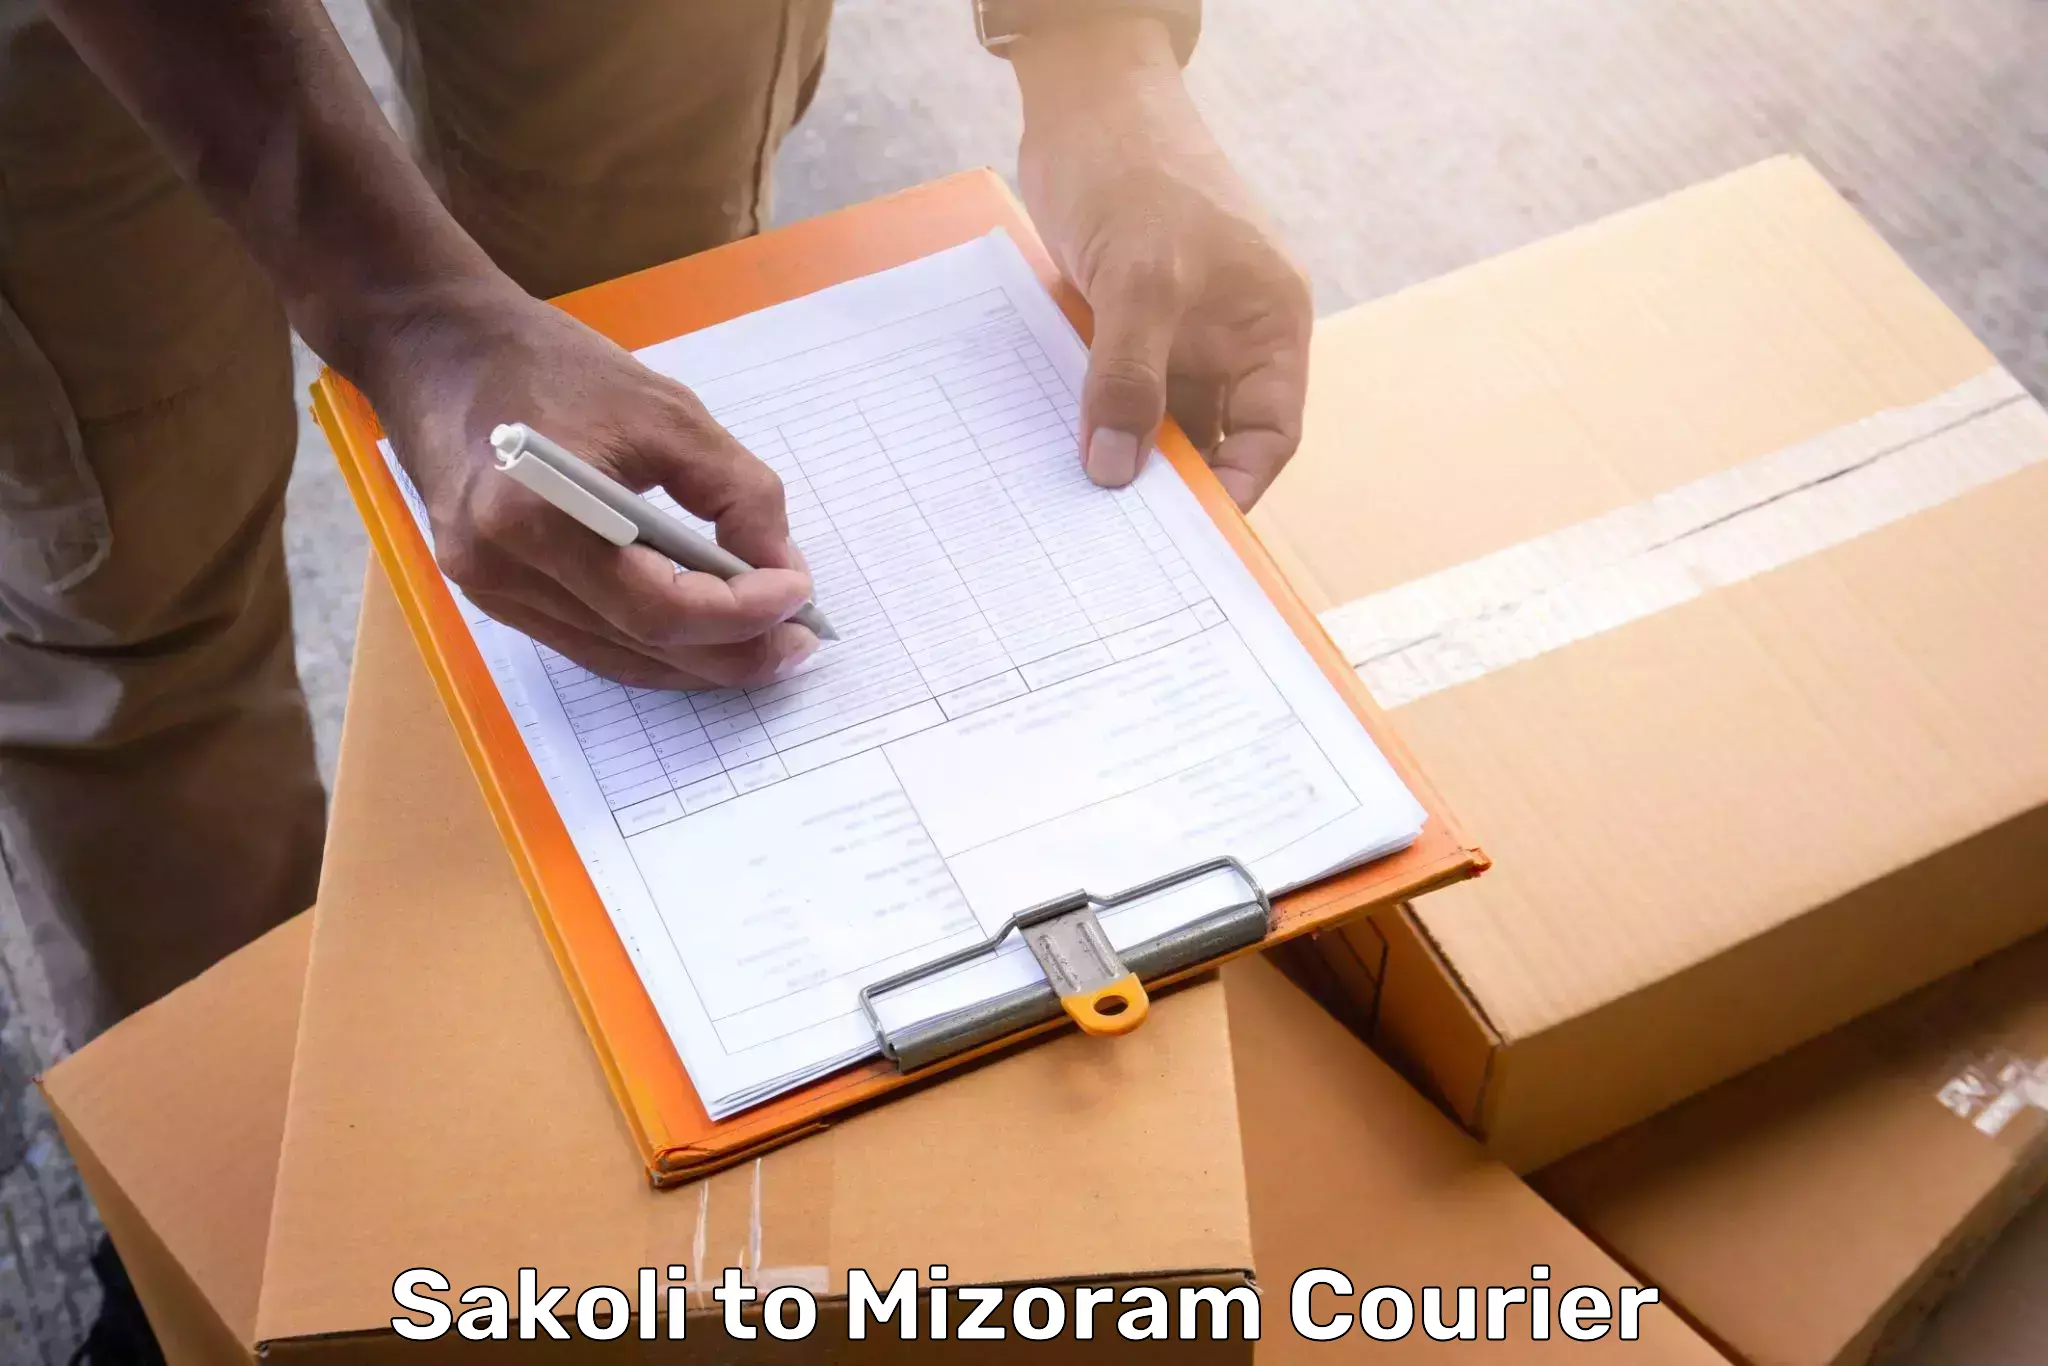 Luggage shipment specialists Sakoli to Mizoram